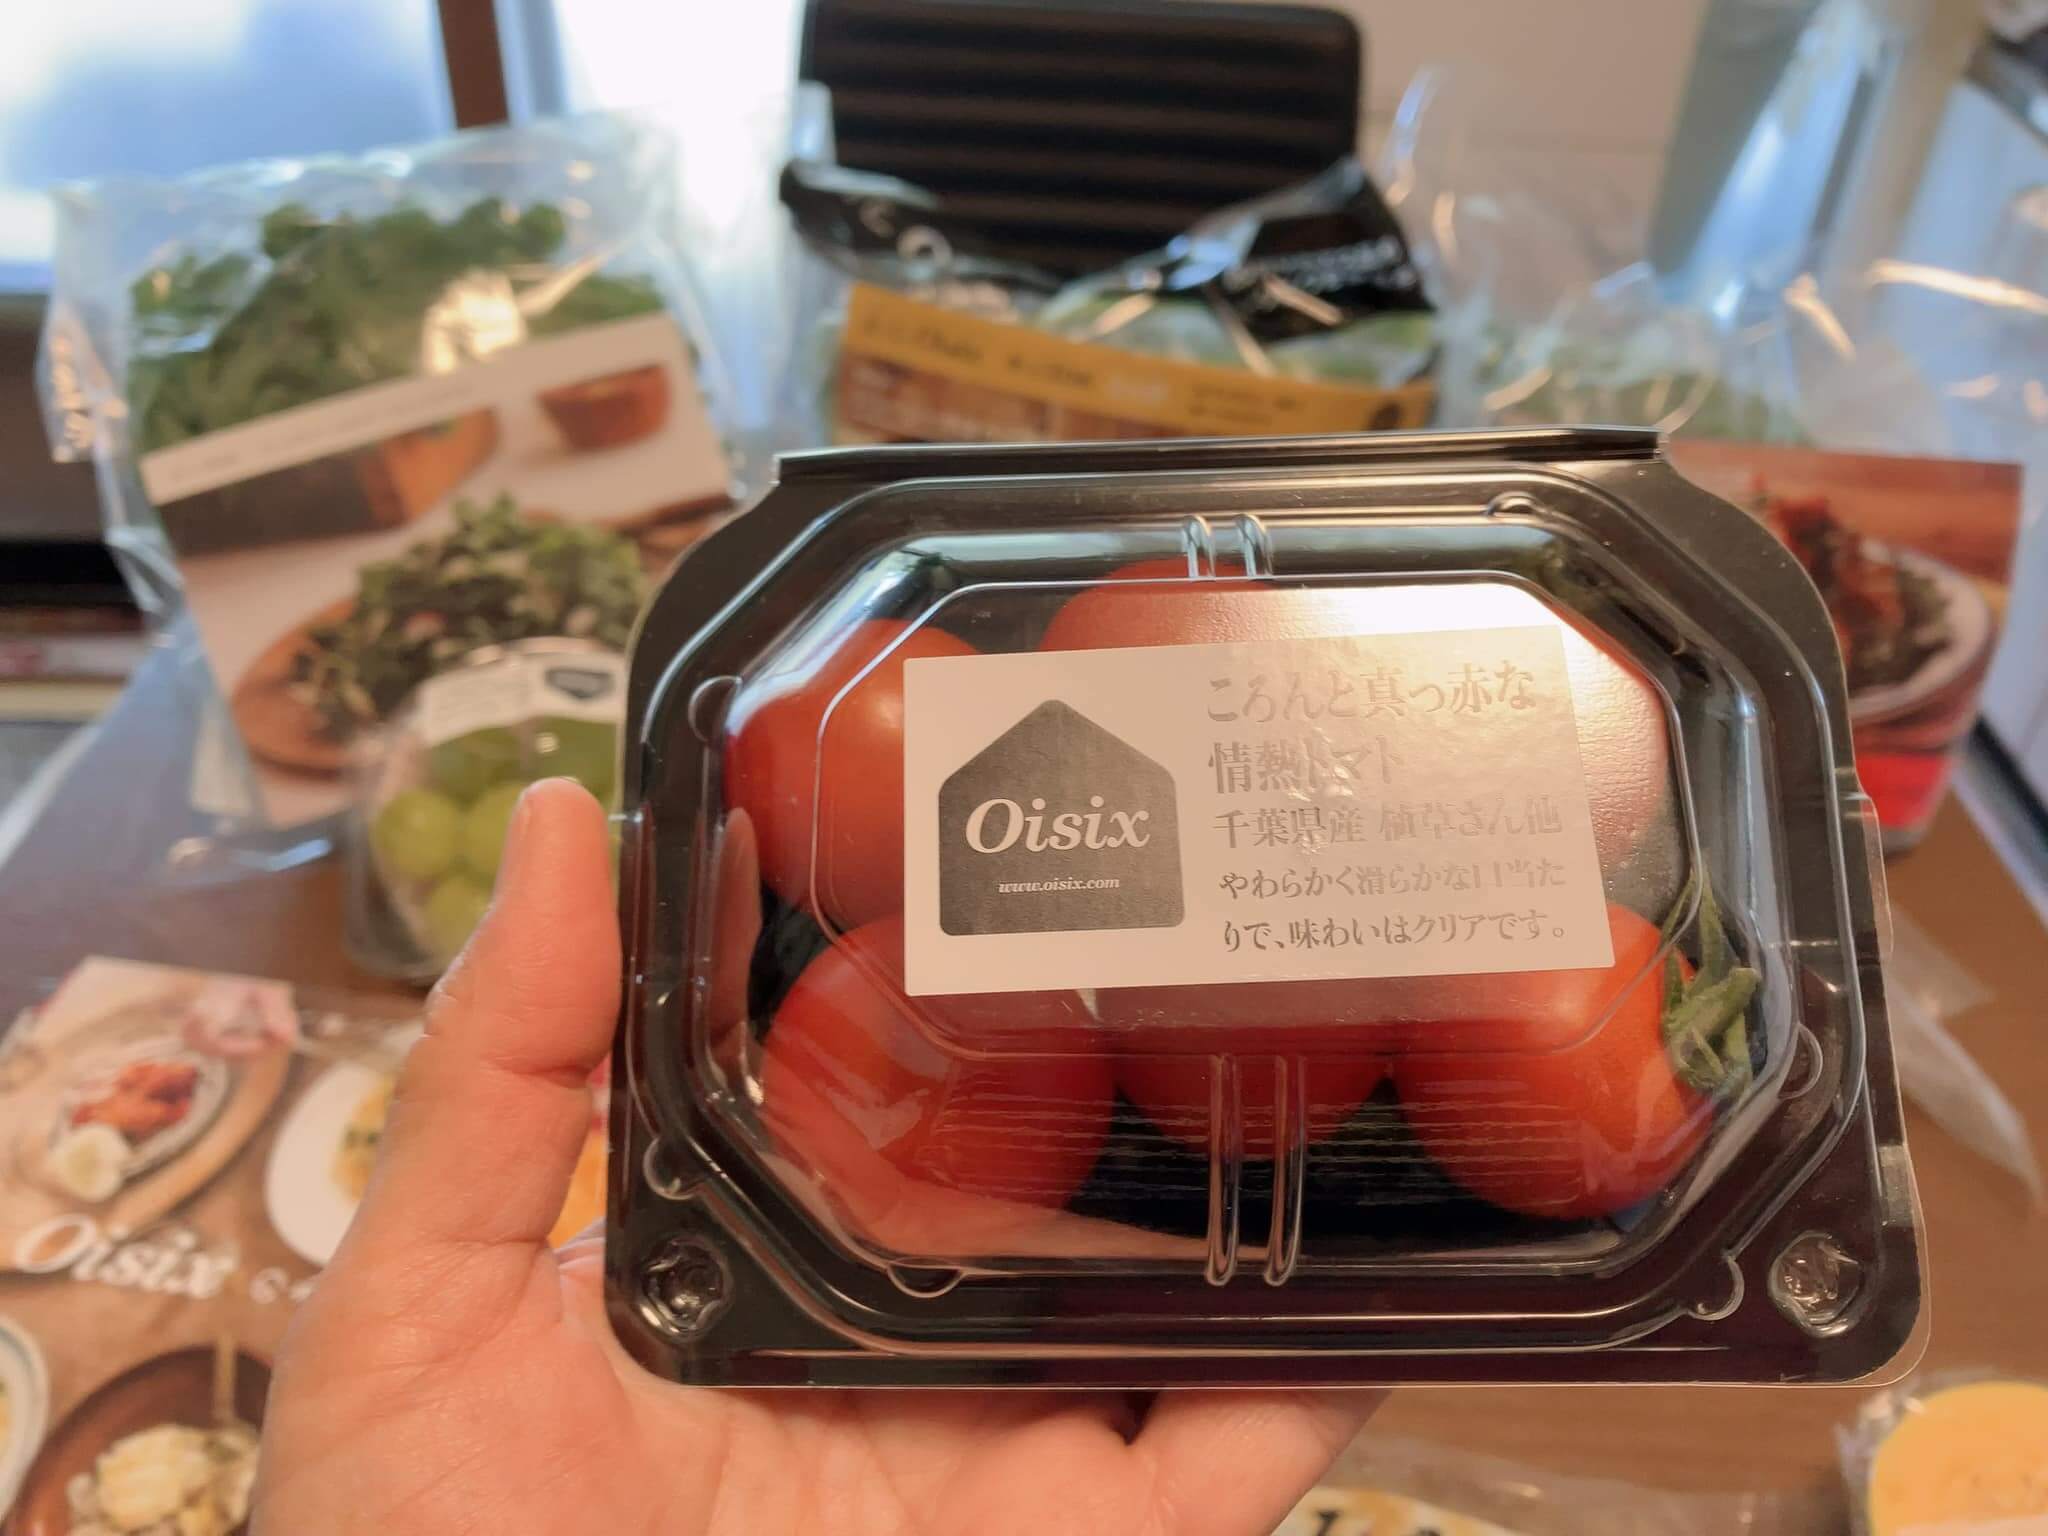 オイシックスのおためしセットのころんと真っ赤な情熱トマトを撮影した写真